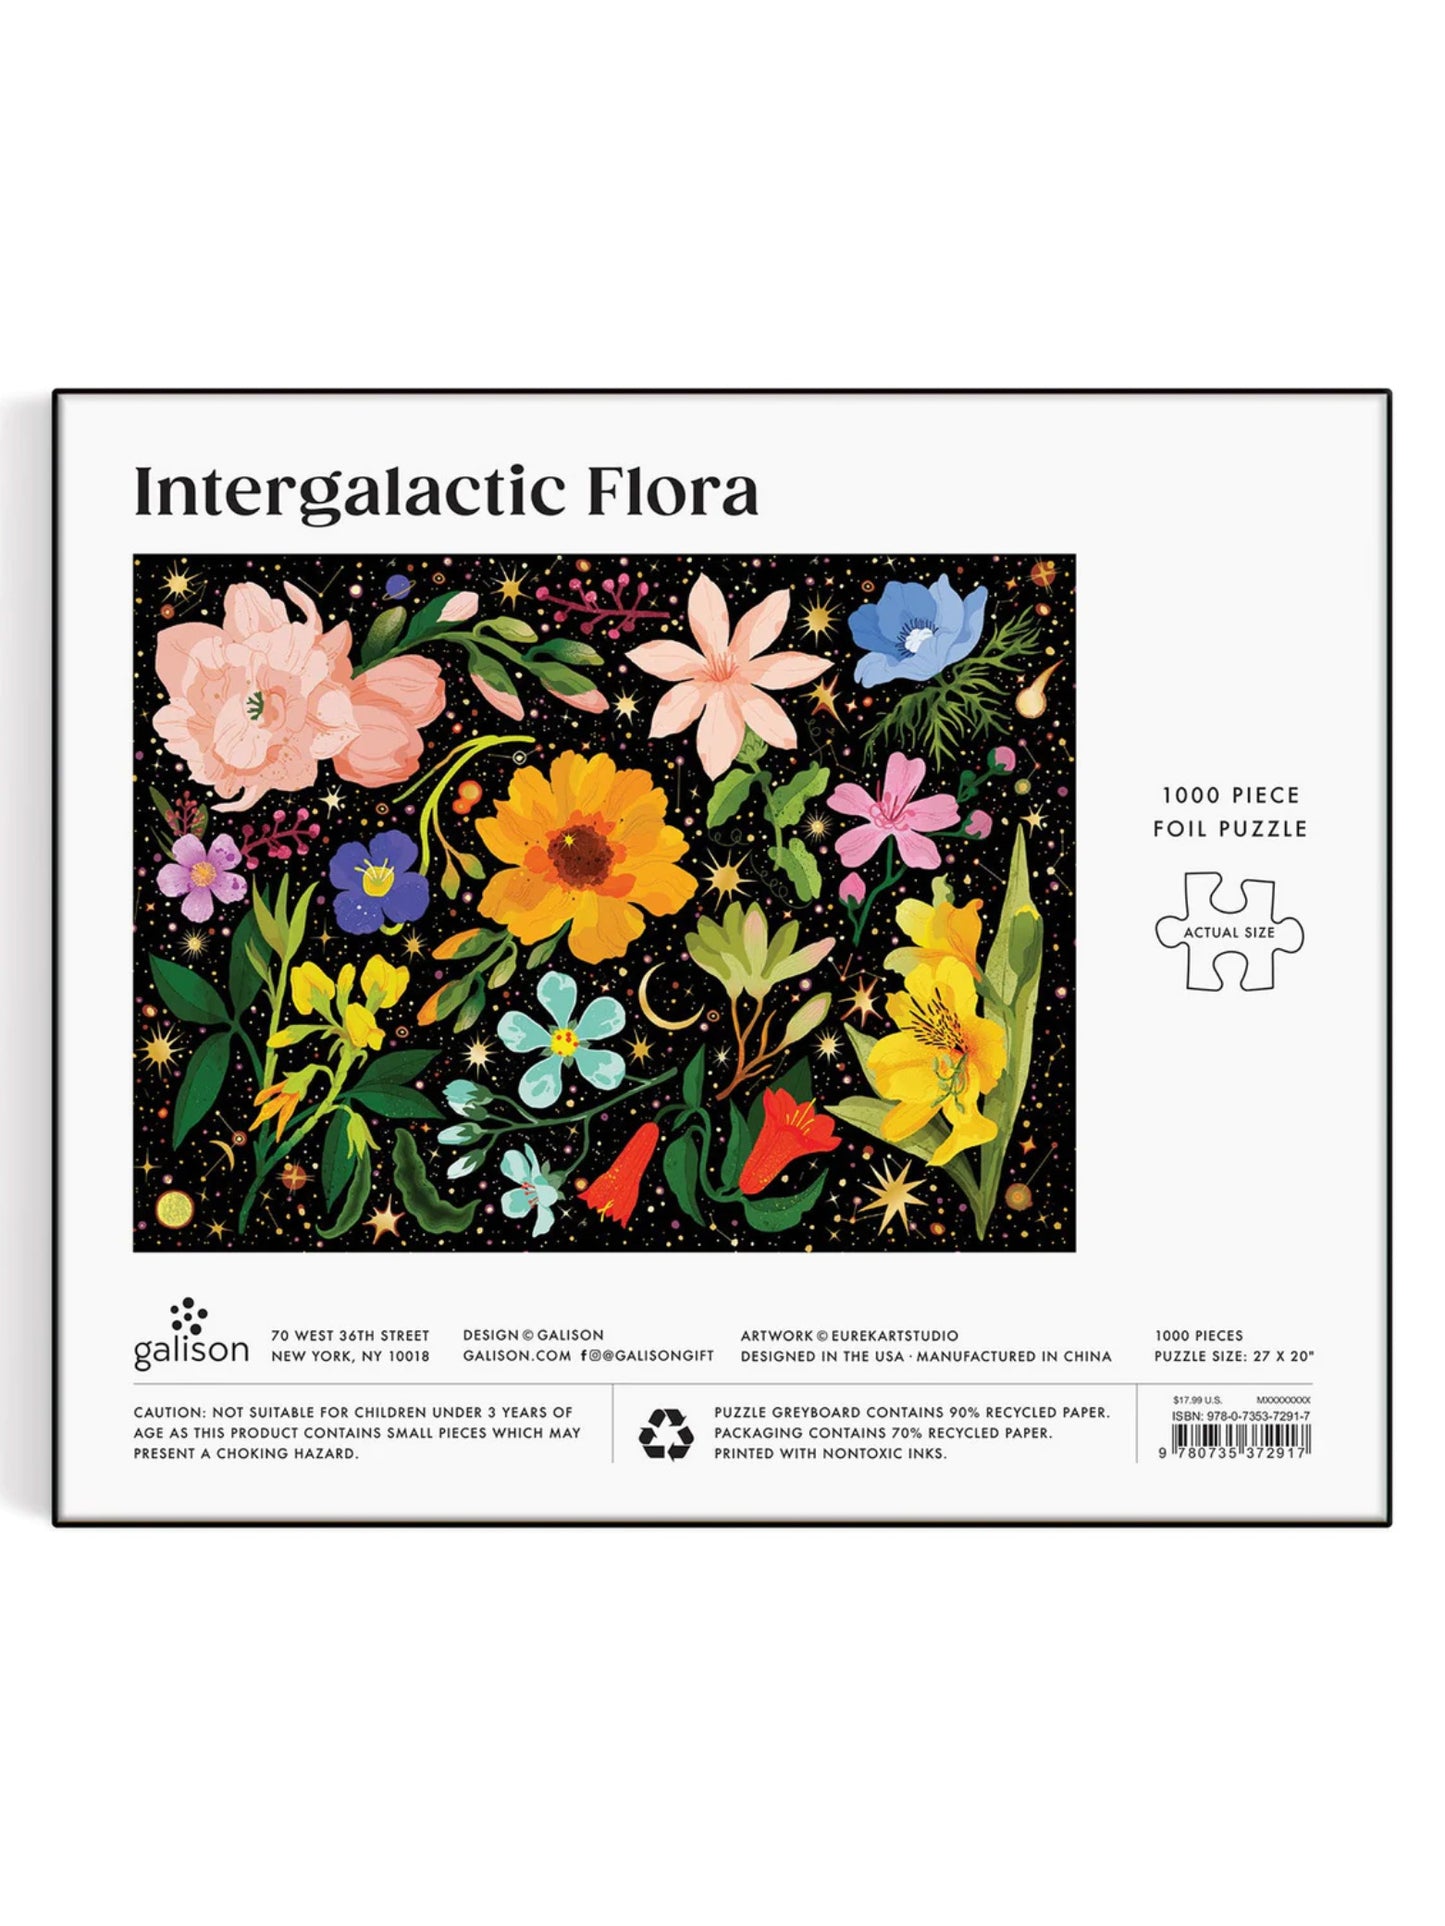 intergalactic flora foil puzzle